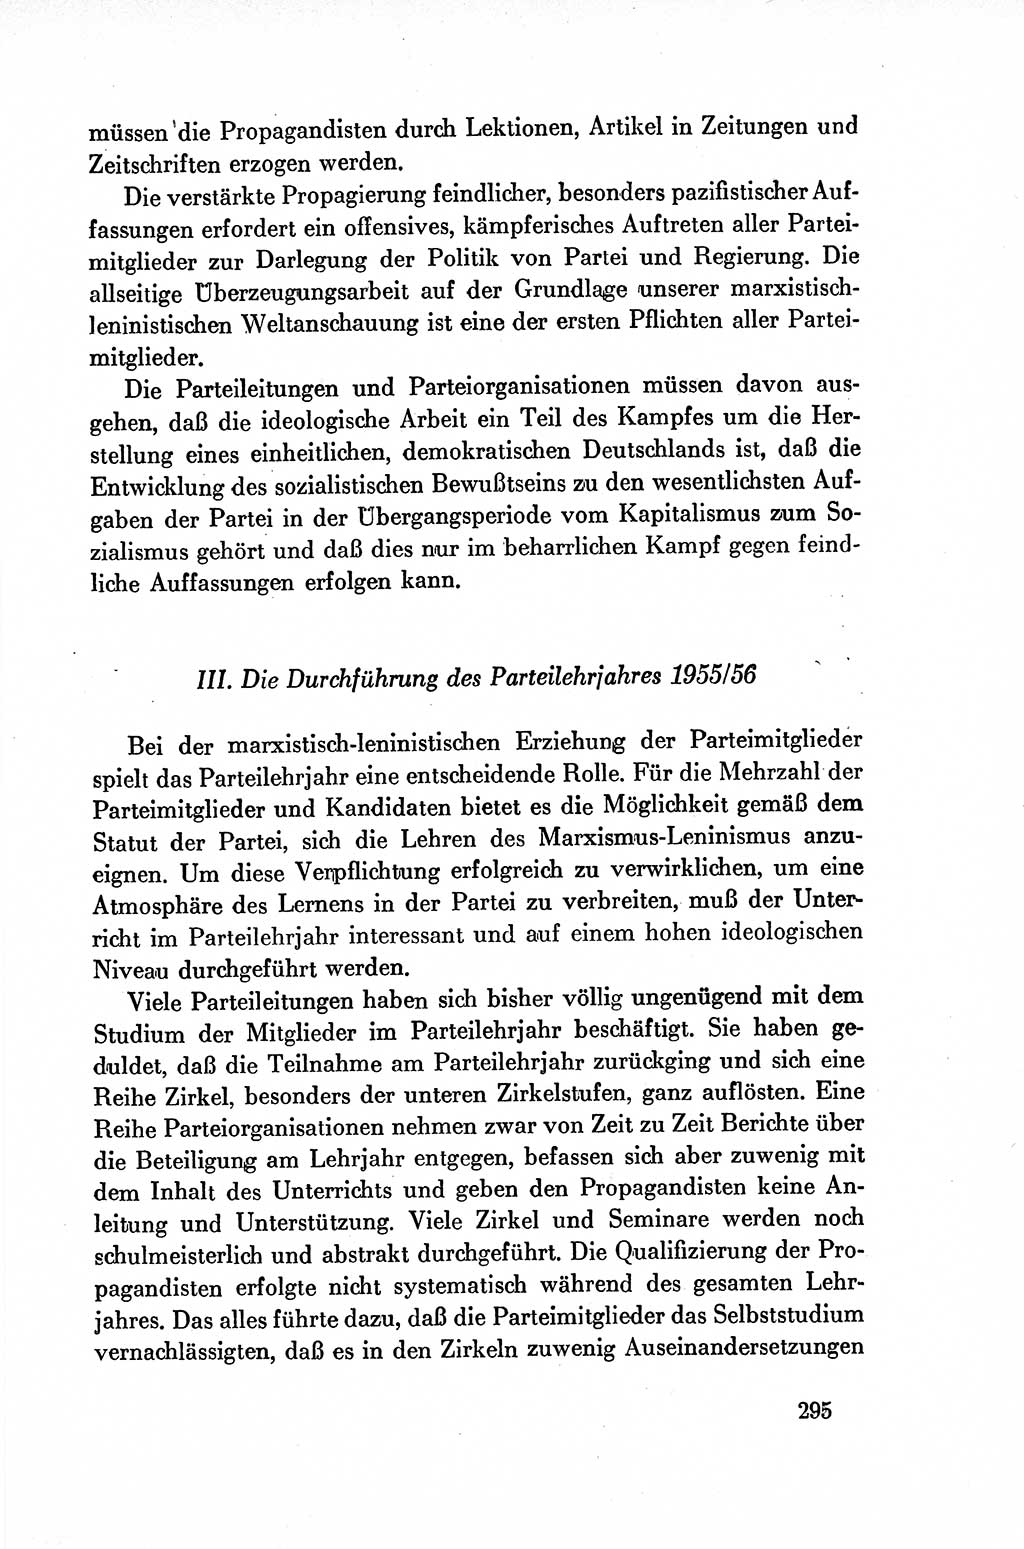 Dokumente der Sozialistischen Einheitspartei Deutschlands (SED) [Deutsche Demokratische Republik (DDR)] 1954-1955, Seite 295 (Dok. SED DDR 1954-1955, S. 295)